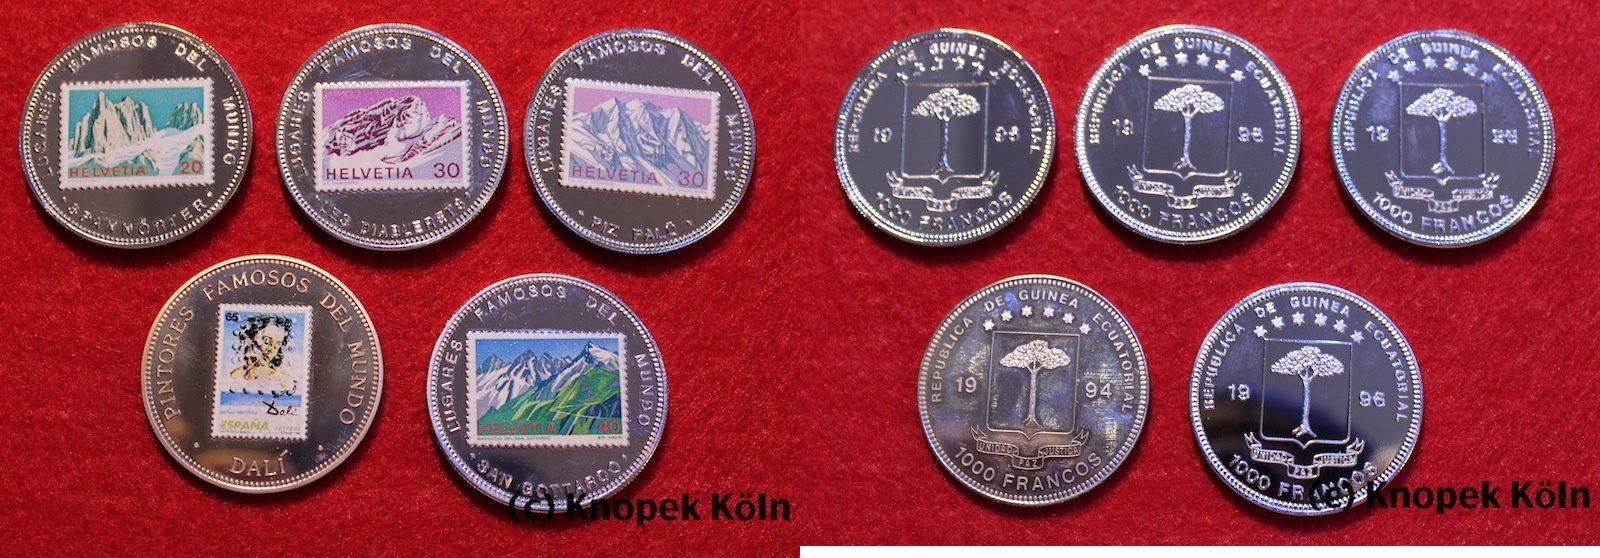 Foto Äquatorial Guinea 5 x 1000 Francos coloriert 1994-1996 foto 787706